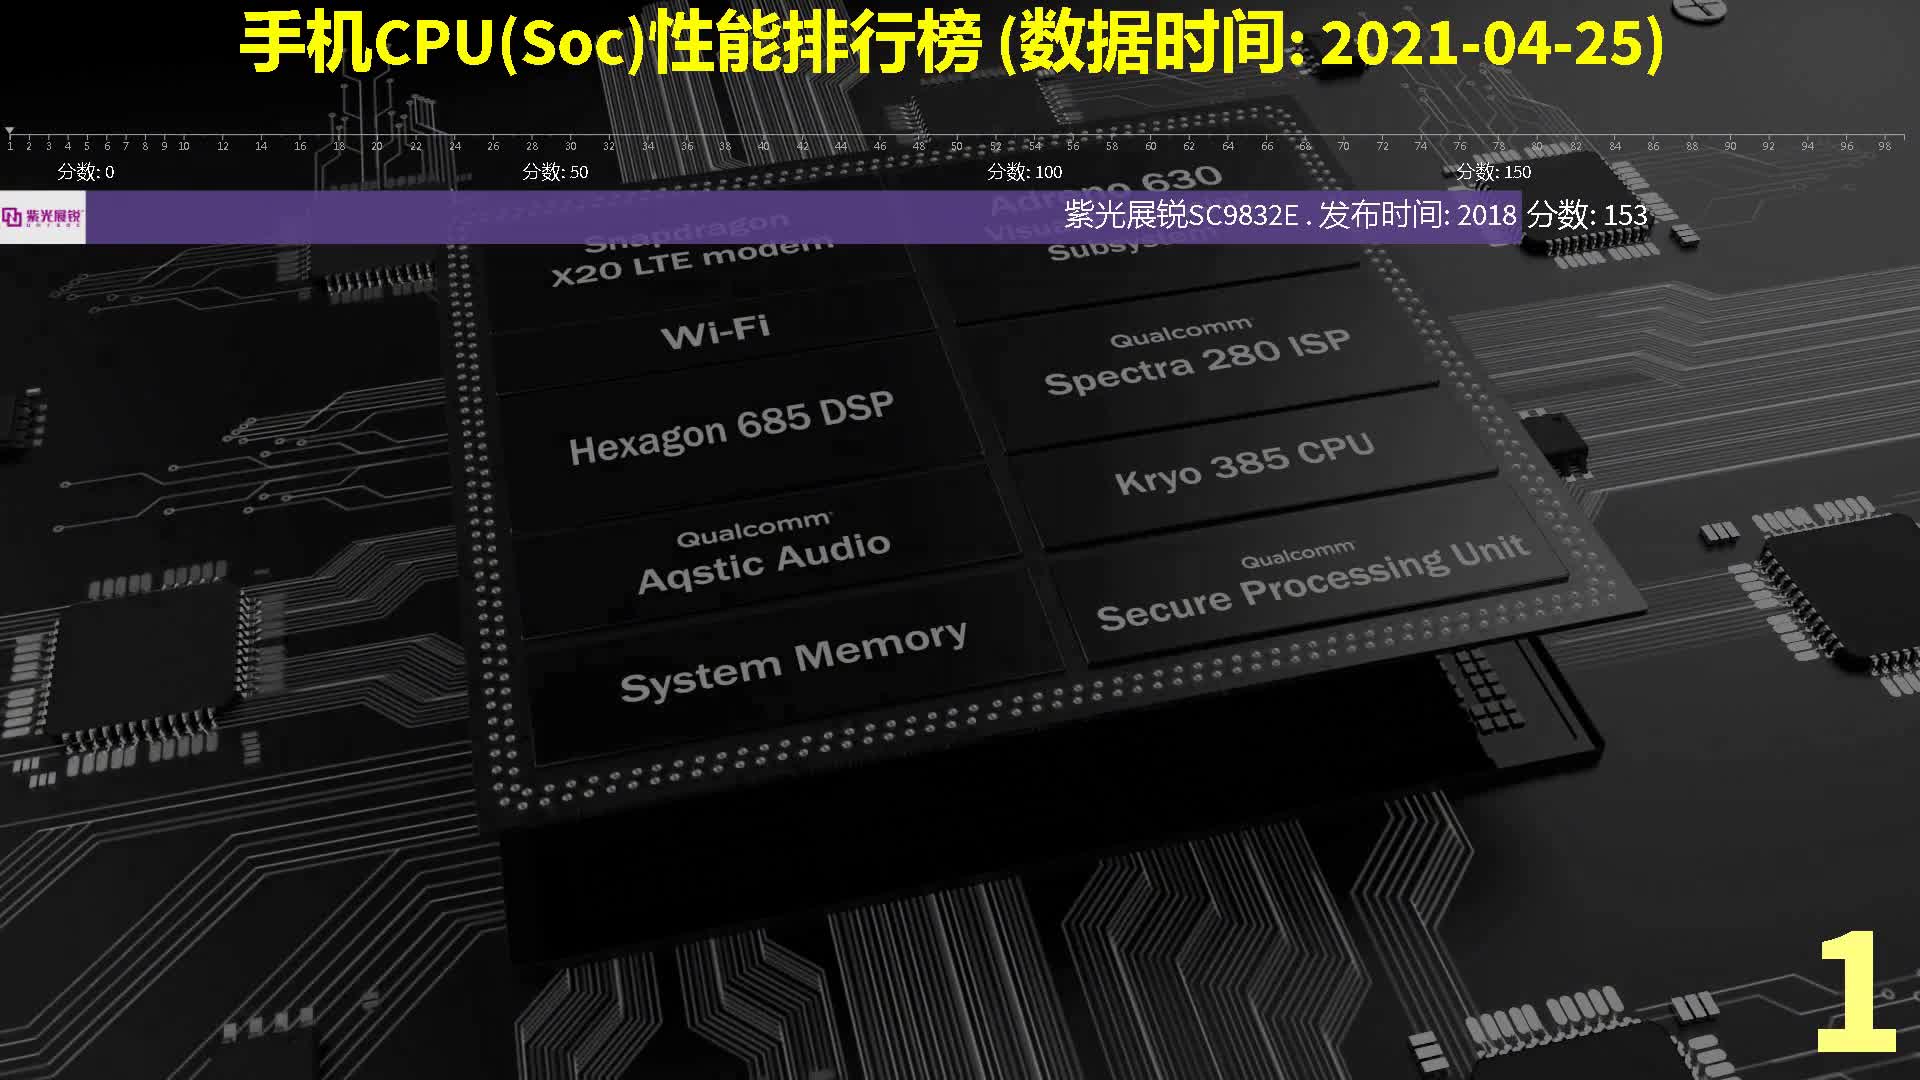 514.手机CPU(Soc)性能排行榜,数据时间2021-04-25